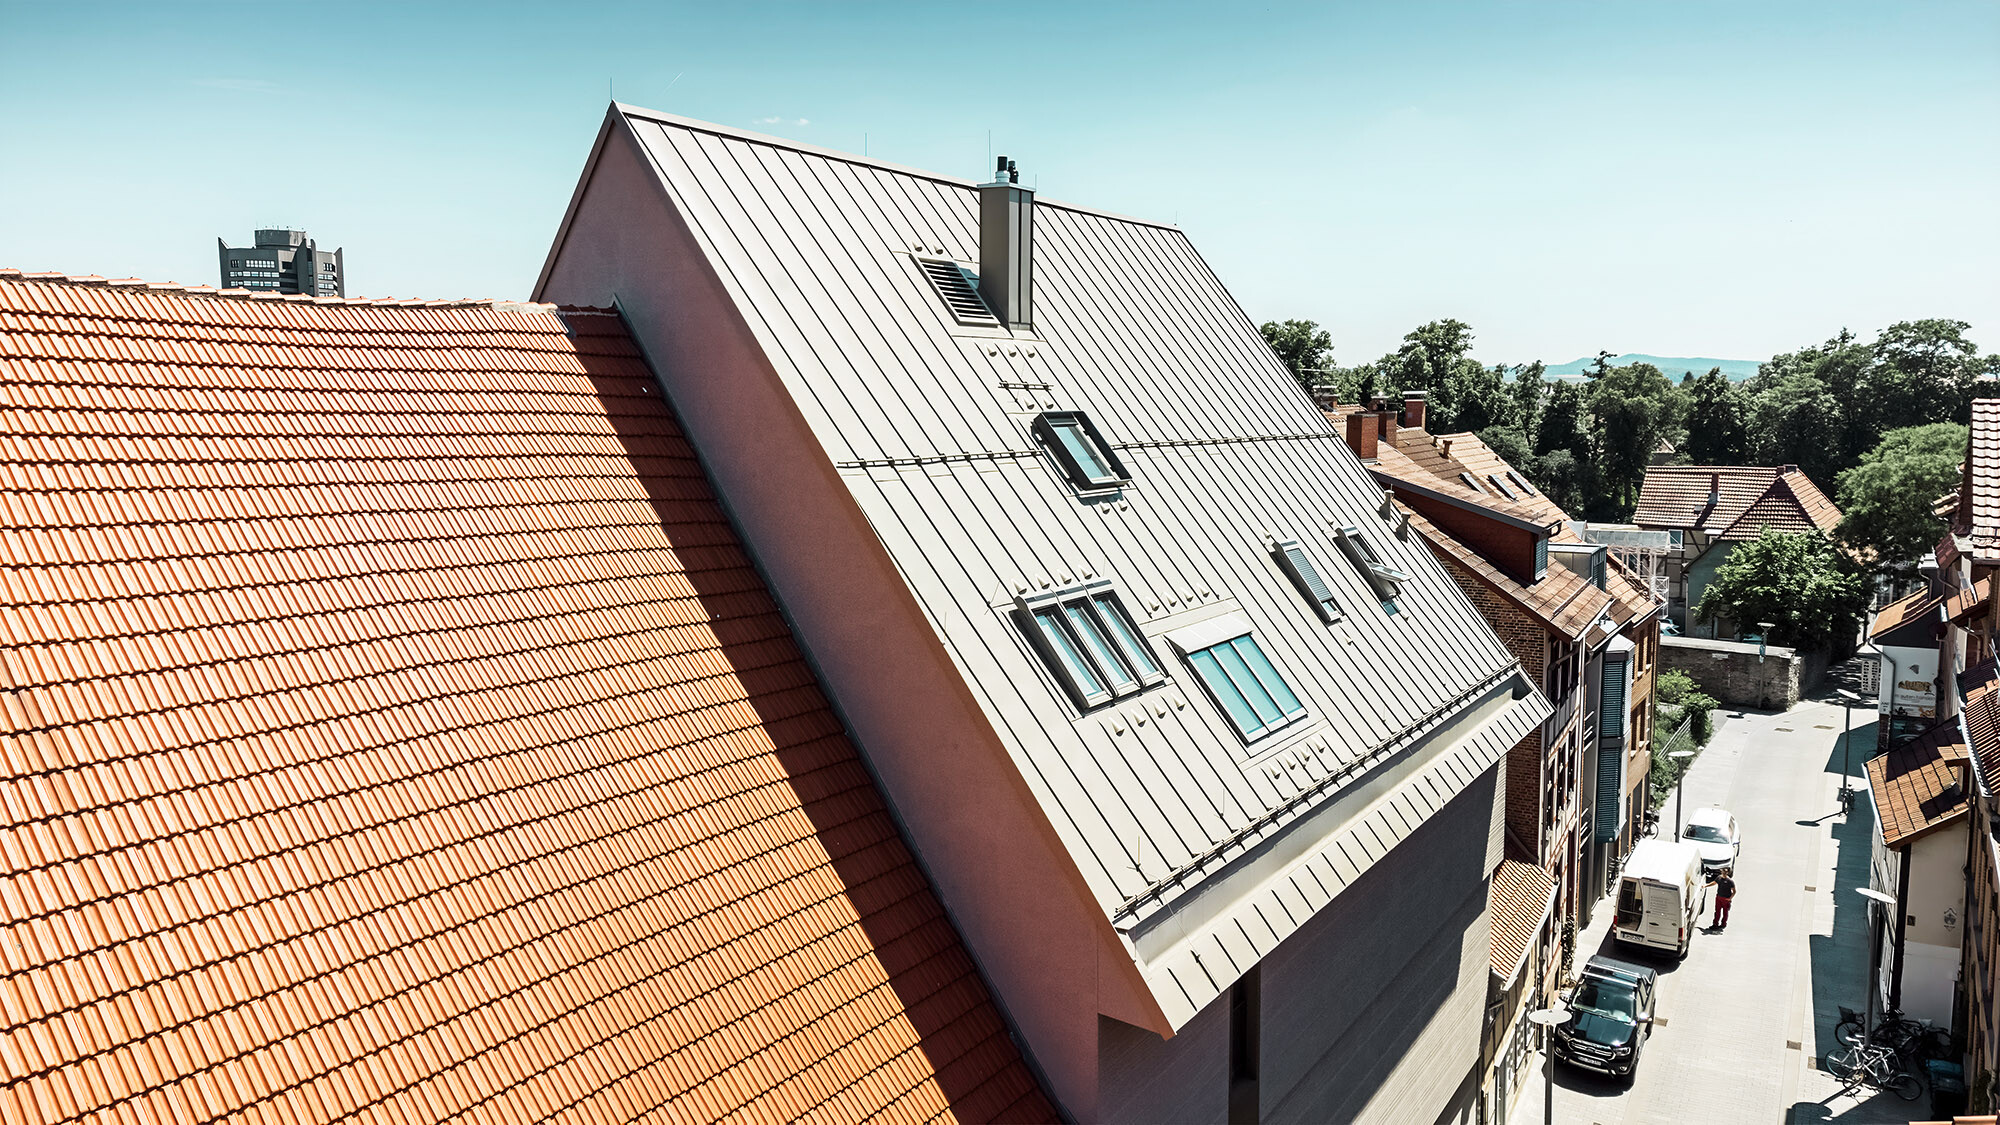 Eine Seitenansicht dieses außergewöhnlichen Daches neben rostfarbenen Flachziegelbauten.